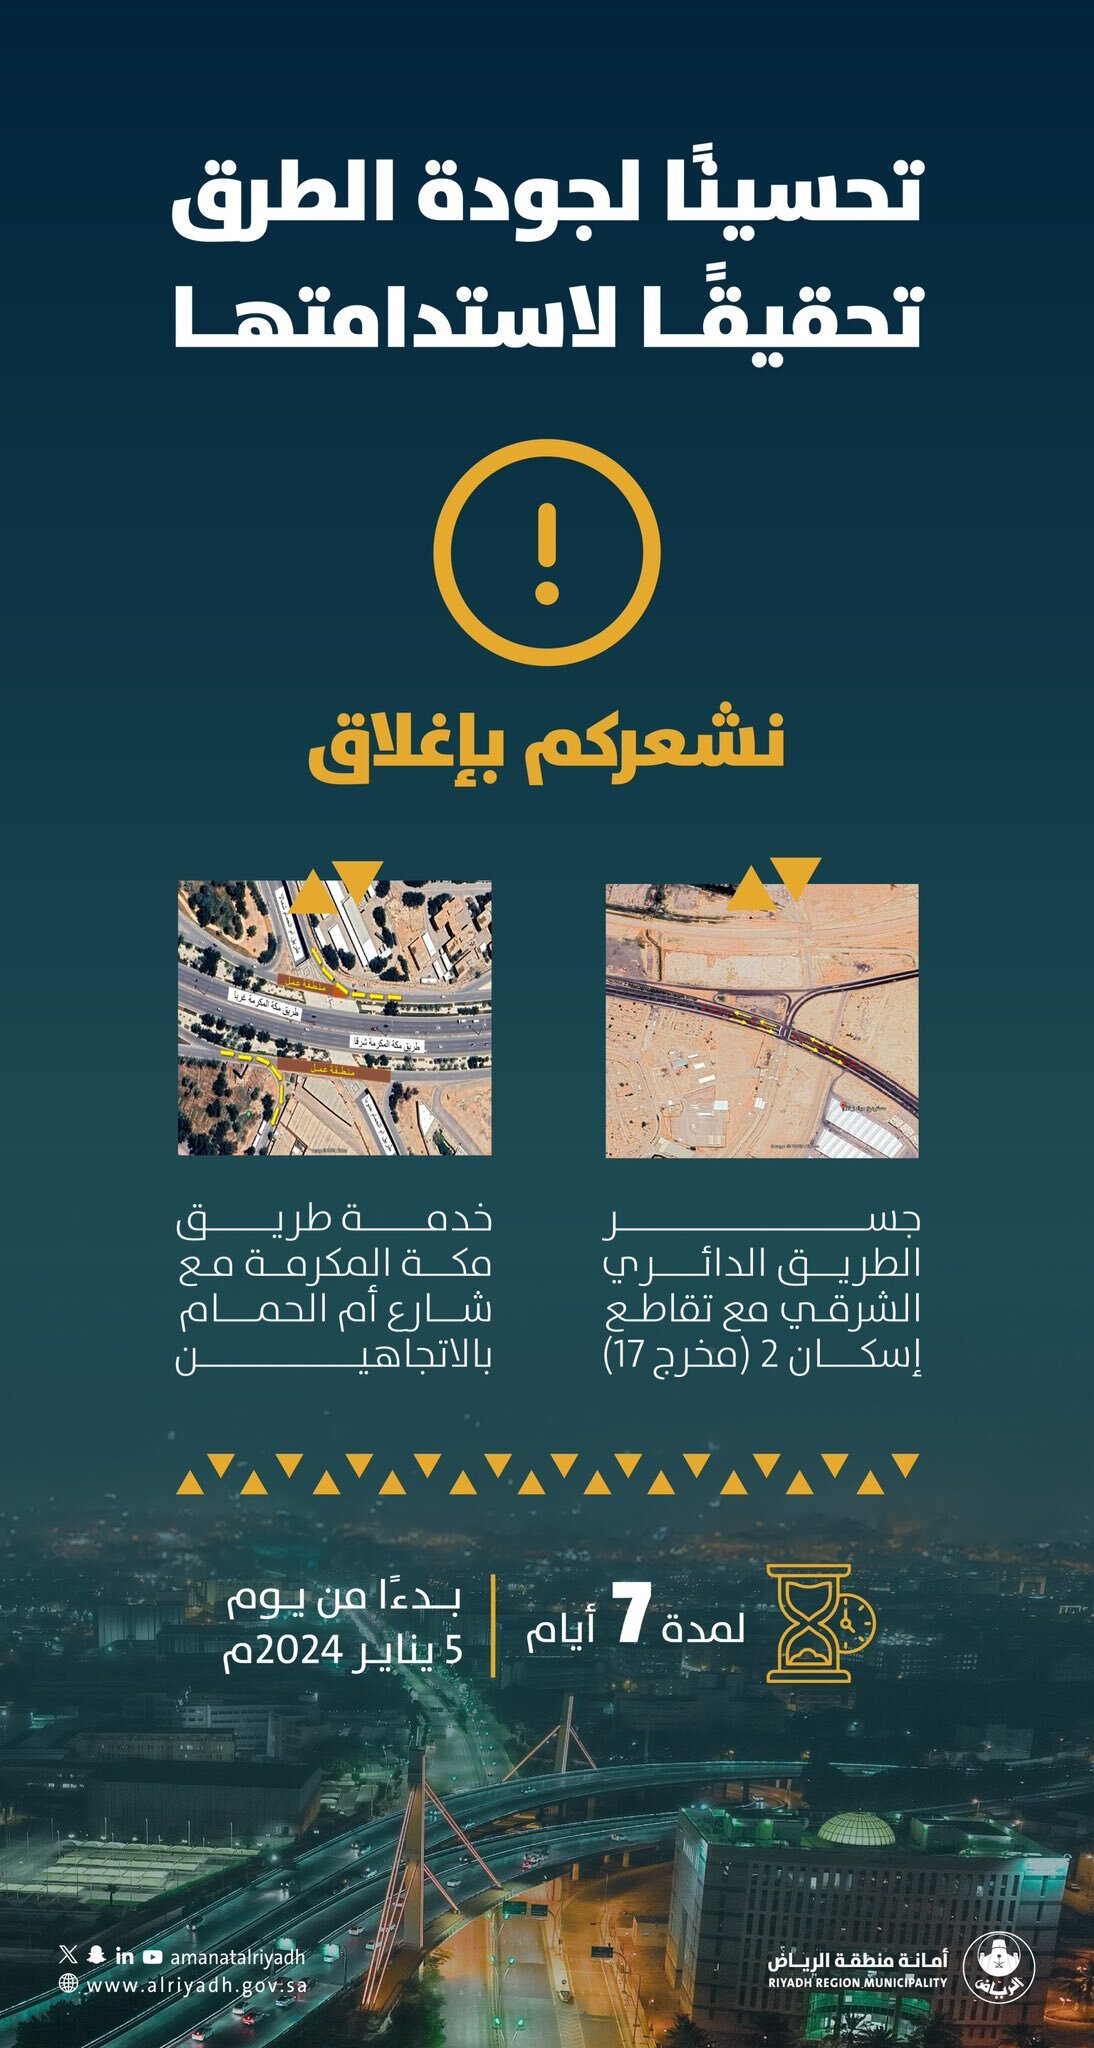 "أمانة الرياض": إغلاق جسر الطريق الدائري الشرقي وخدمة طريق مكة المكرمة 8